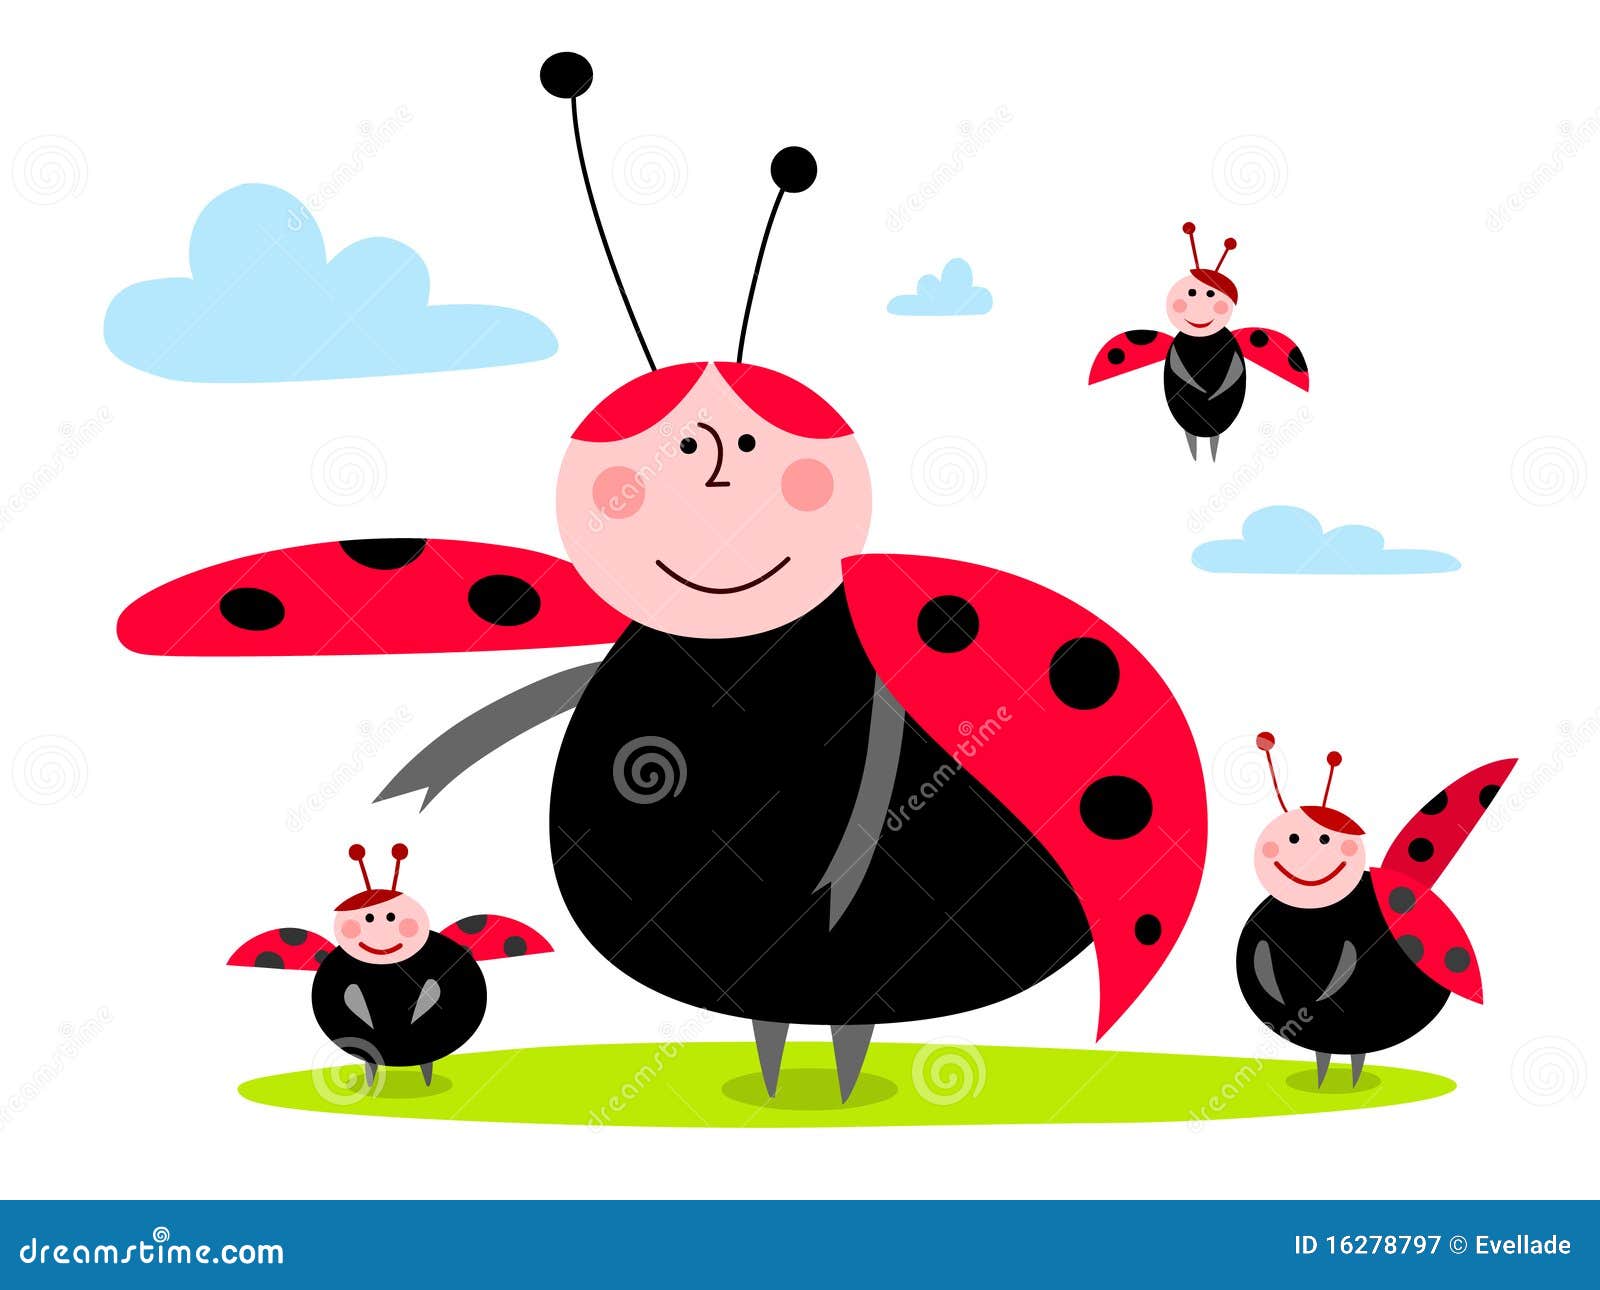 Familia del Ladybug. Ilustración del ladybug de la historieta con su familia. En un fondo blanco.